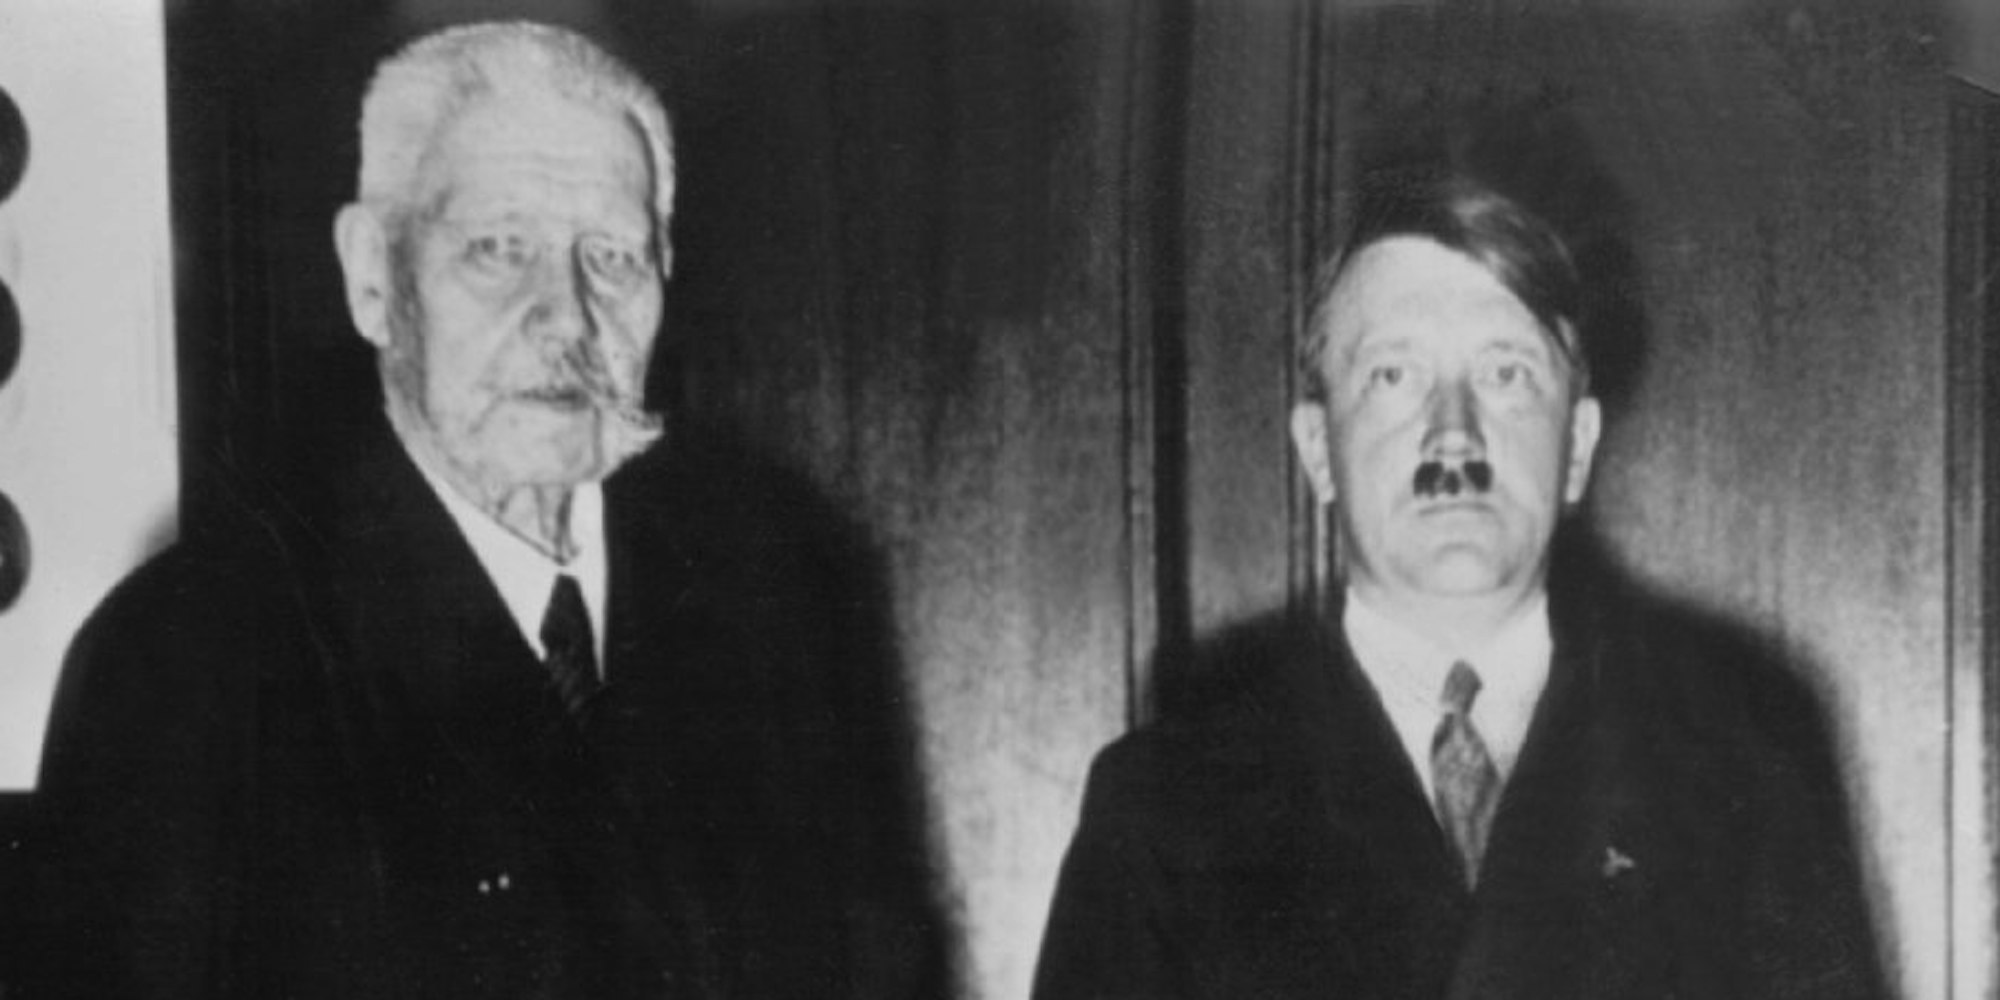 Generalfeldmarschall und Reichspräsident Paul von Hindenburg (l) und Adolf Hitler stehen nach dessen Ernennung zum Reichskanzler am 30. Januar 1933 in Berlin zusammen. Es war der Anfang von Deutschlands dunkelstem Kapitel: Am 30. Januar 1933 wird Adolf Hitler Reichskanzler.